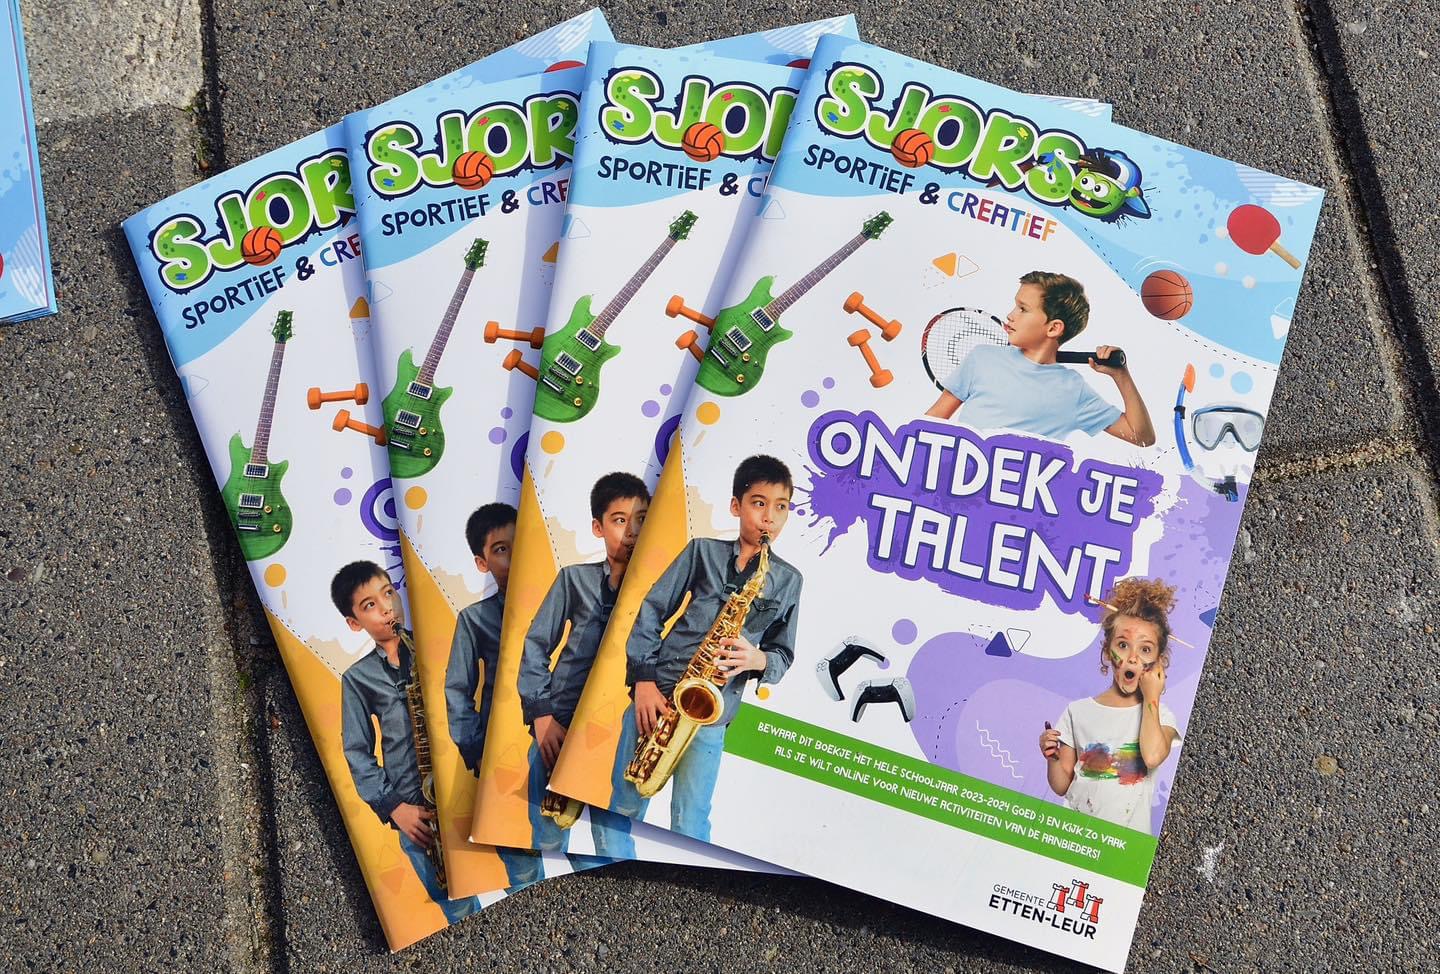 Vier programmaboekjes van Sjors sportief en creatief met de titel Ontdek je talent liggen bij elkaar op de stoep